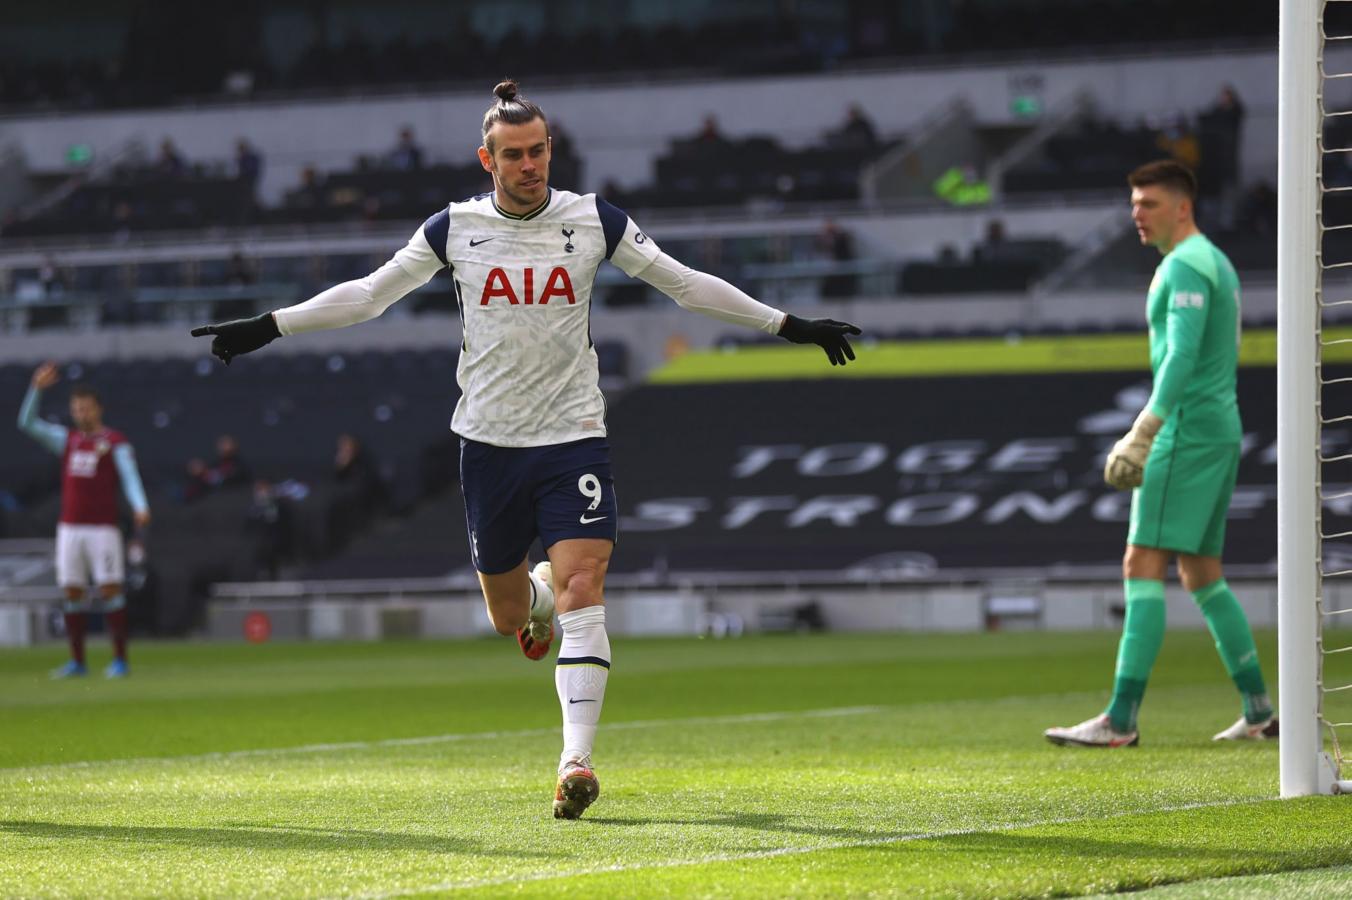 Imagen Gareth Bale celebra uno de sus dos tantos ante Burnley. El galés está atravesando su mejor momento desde su regreso a los Spurs.